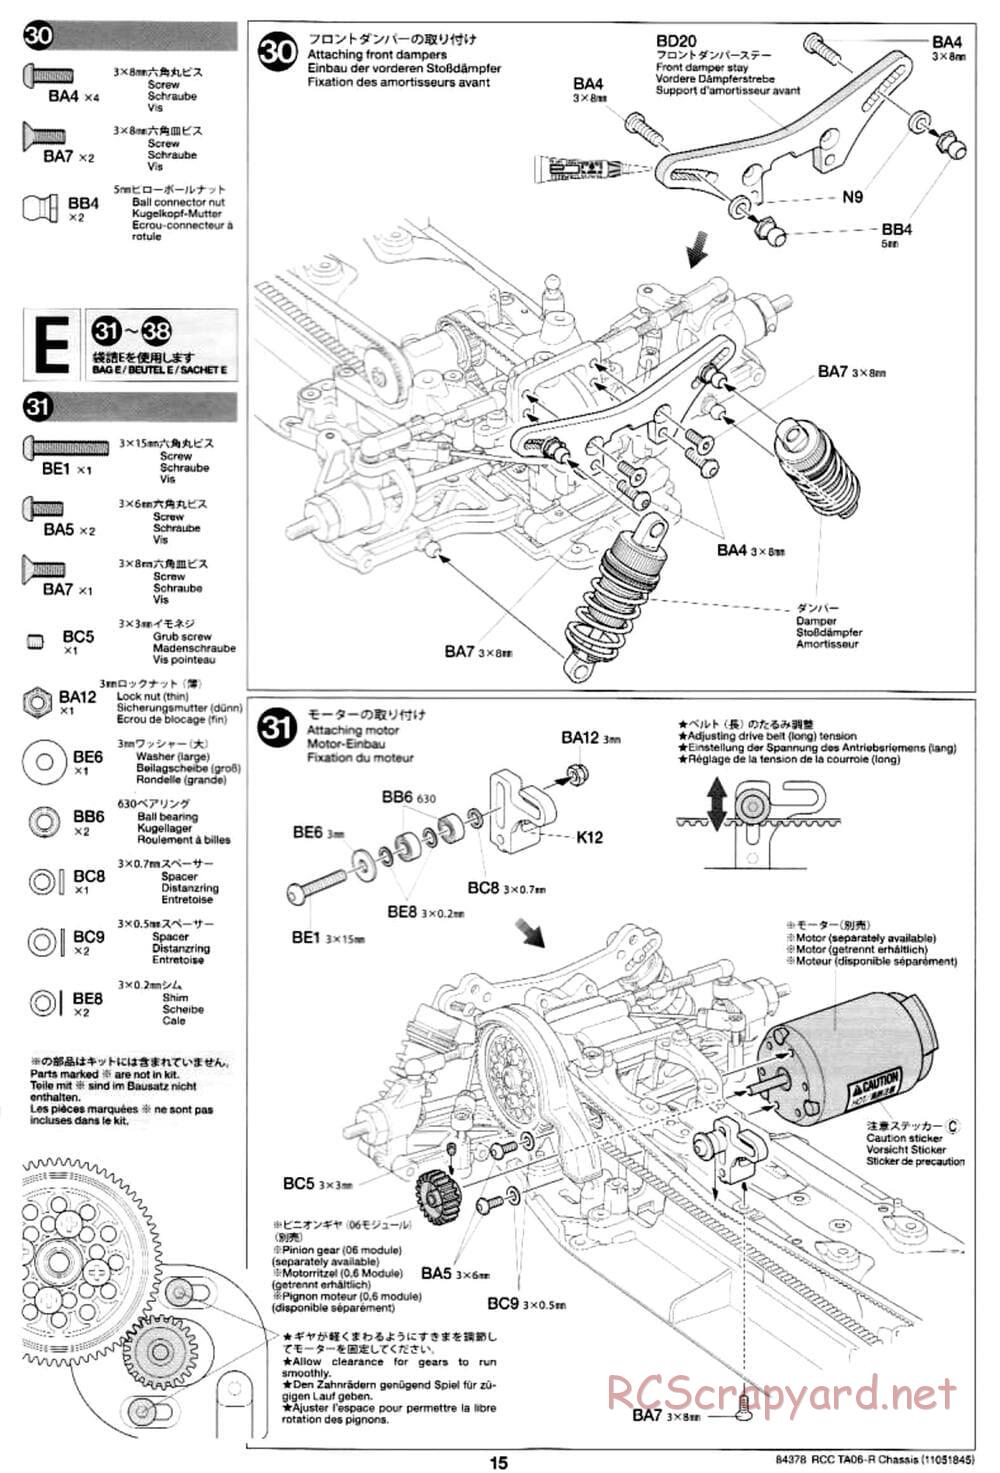 Tamiya - TA06-R Chassis - Manual - Page 15